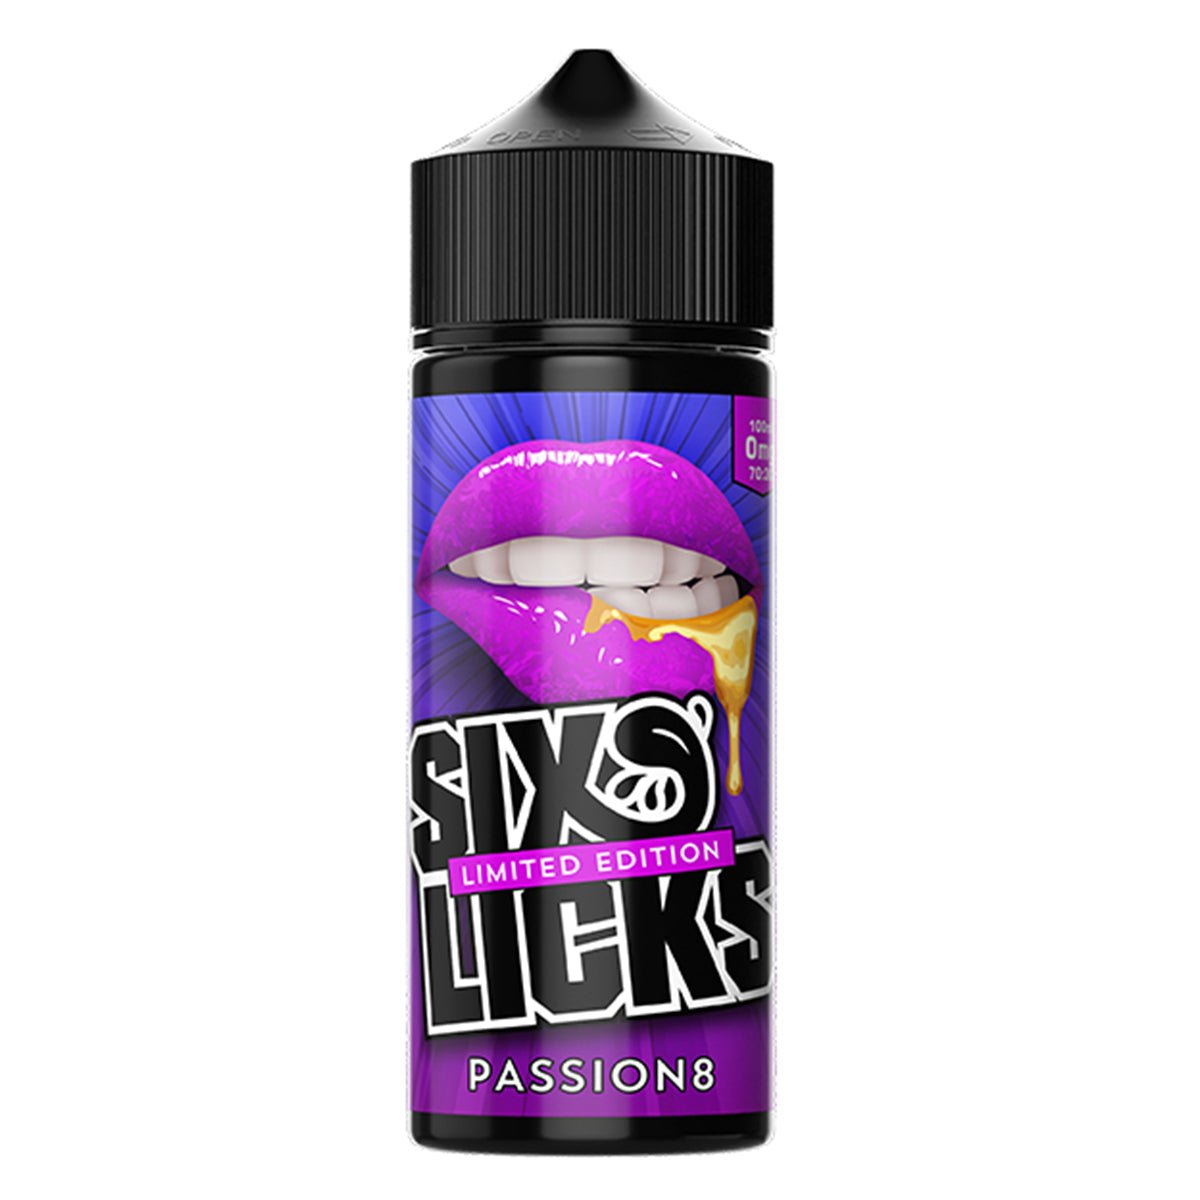 Passion8 100ml Shortfill By Six Licks - Prime Vapes UK